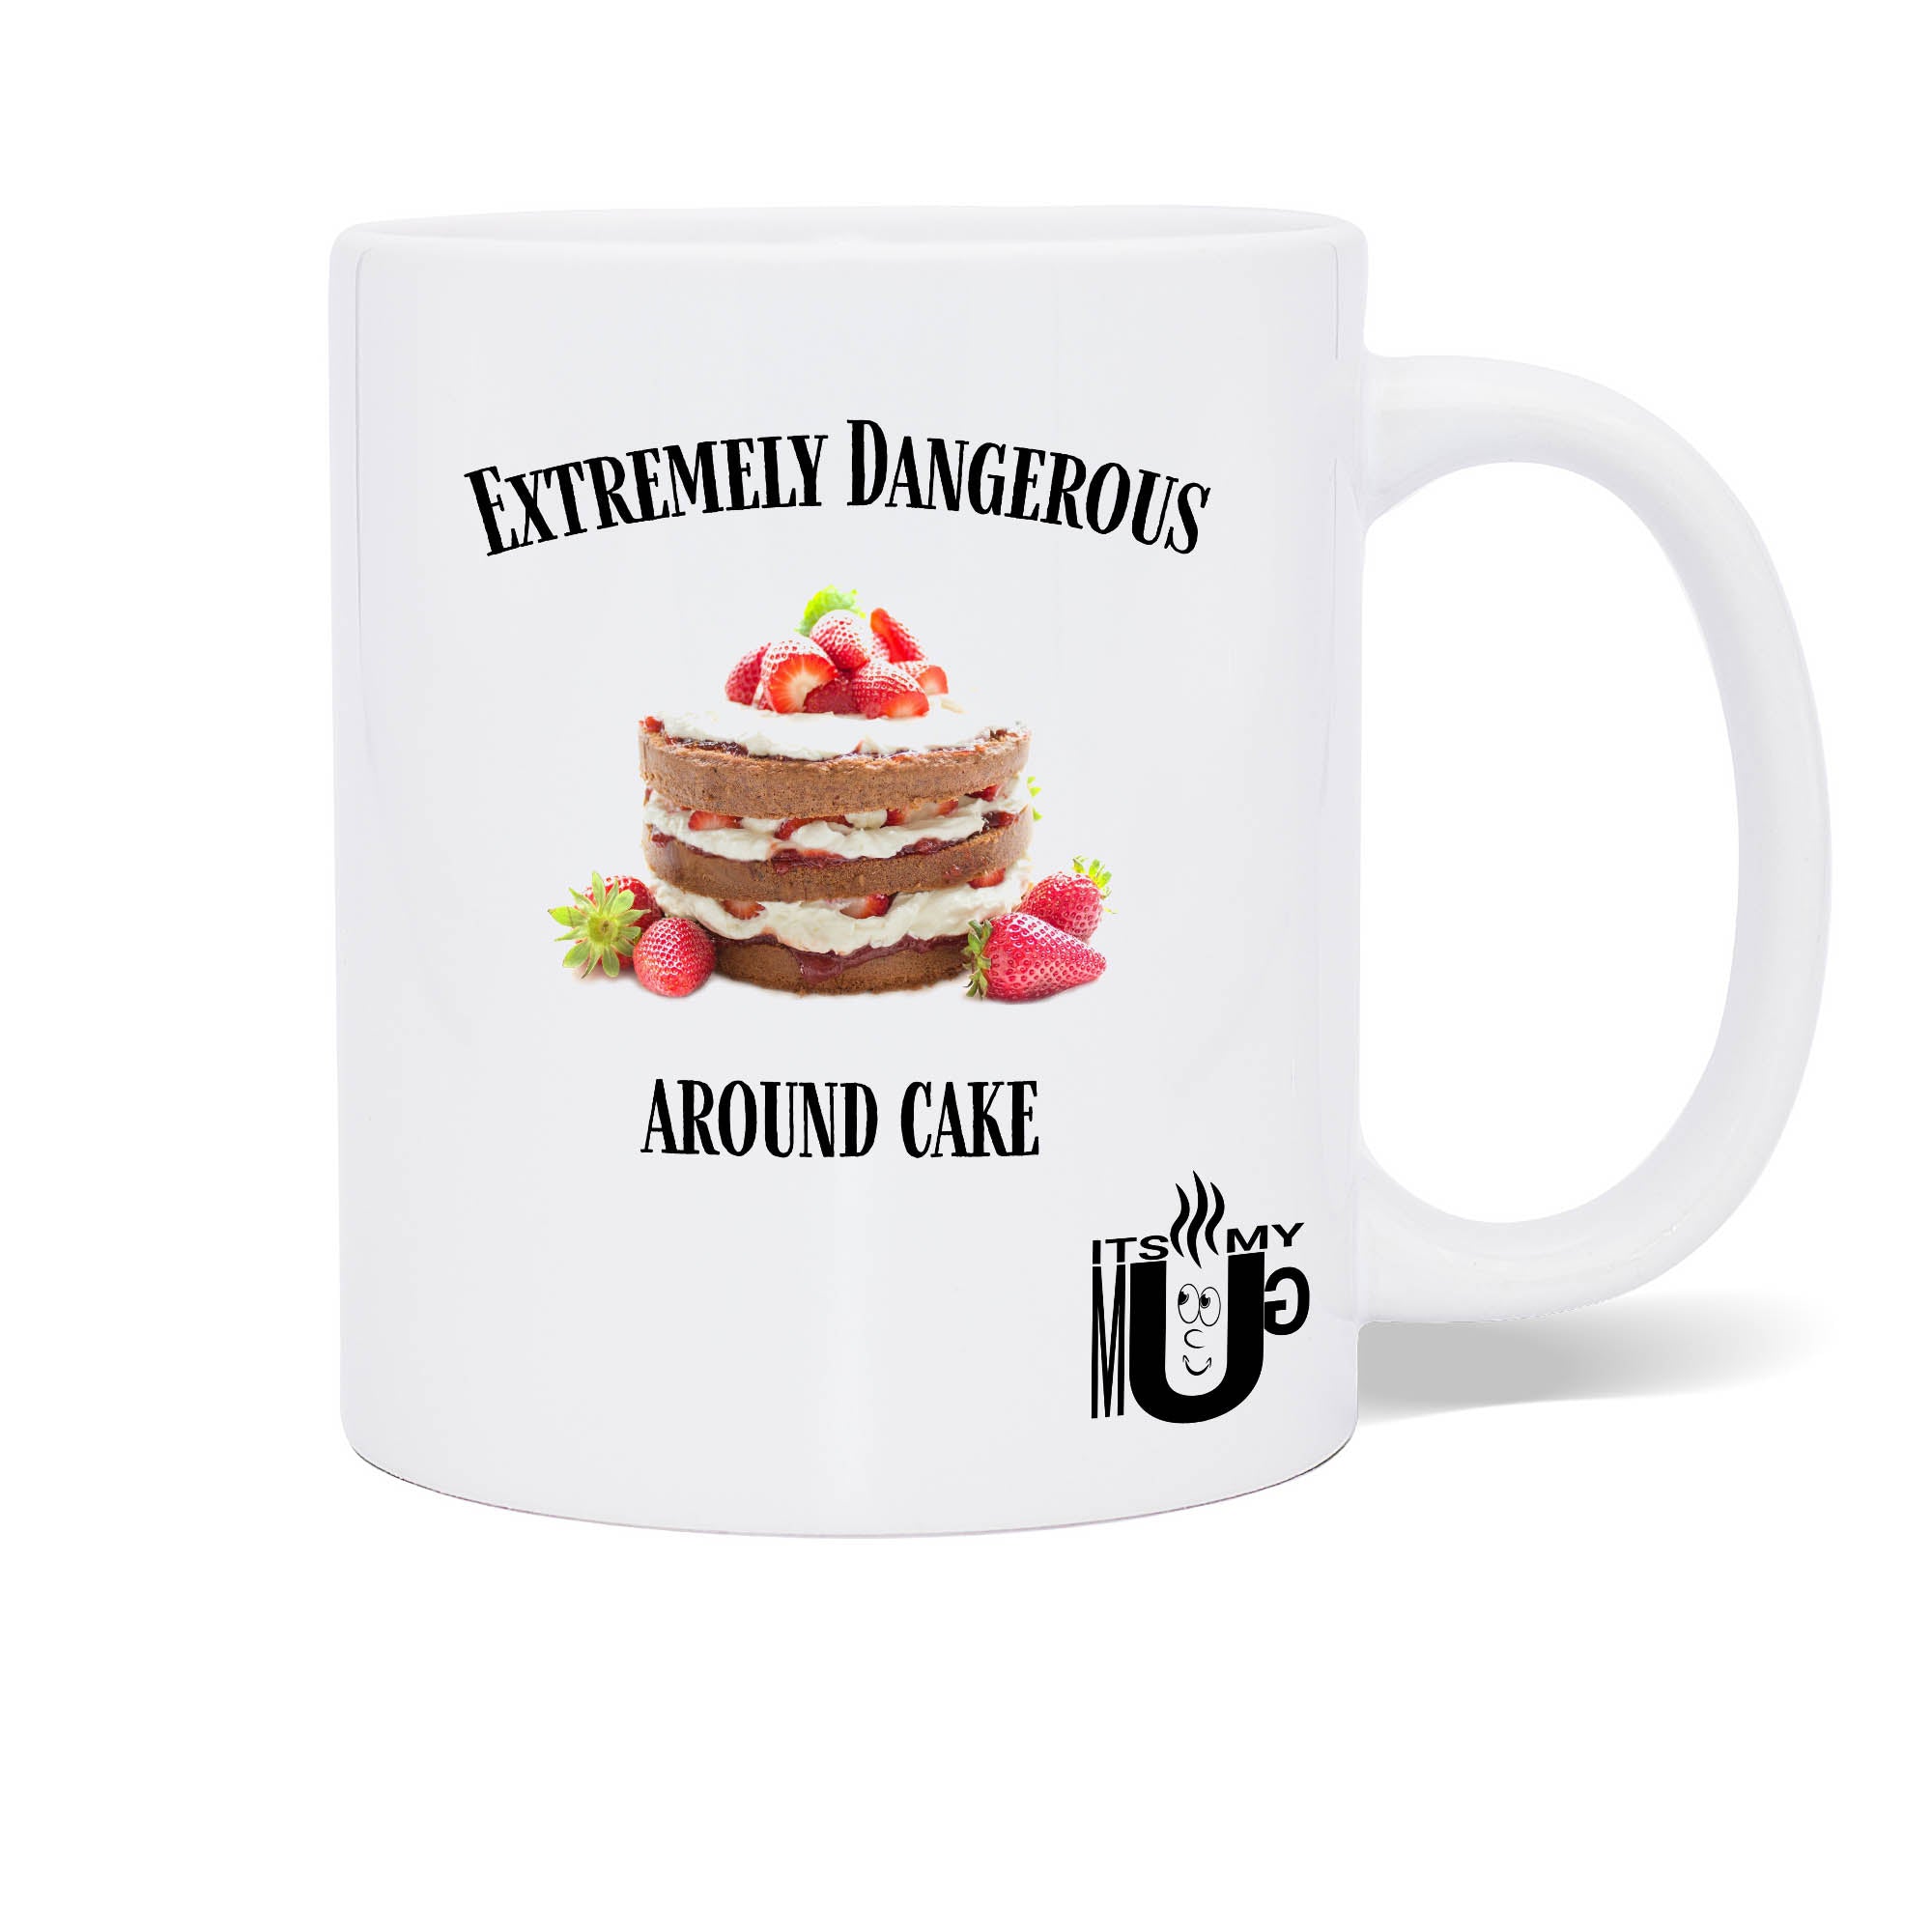 Extremely dangerous around cake Mugshot photo mug – Itsmymug